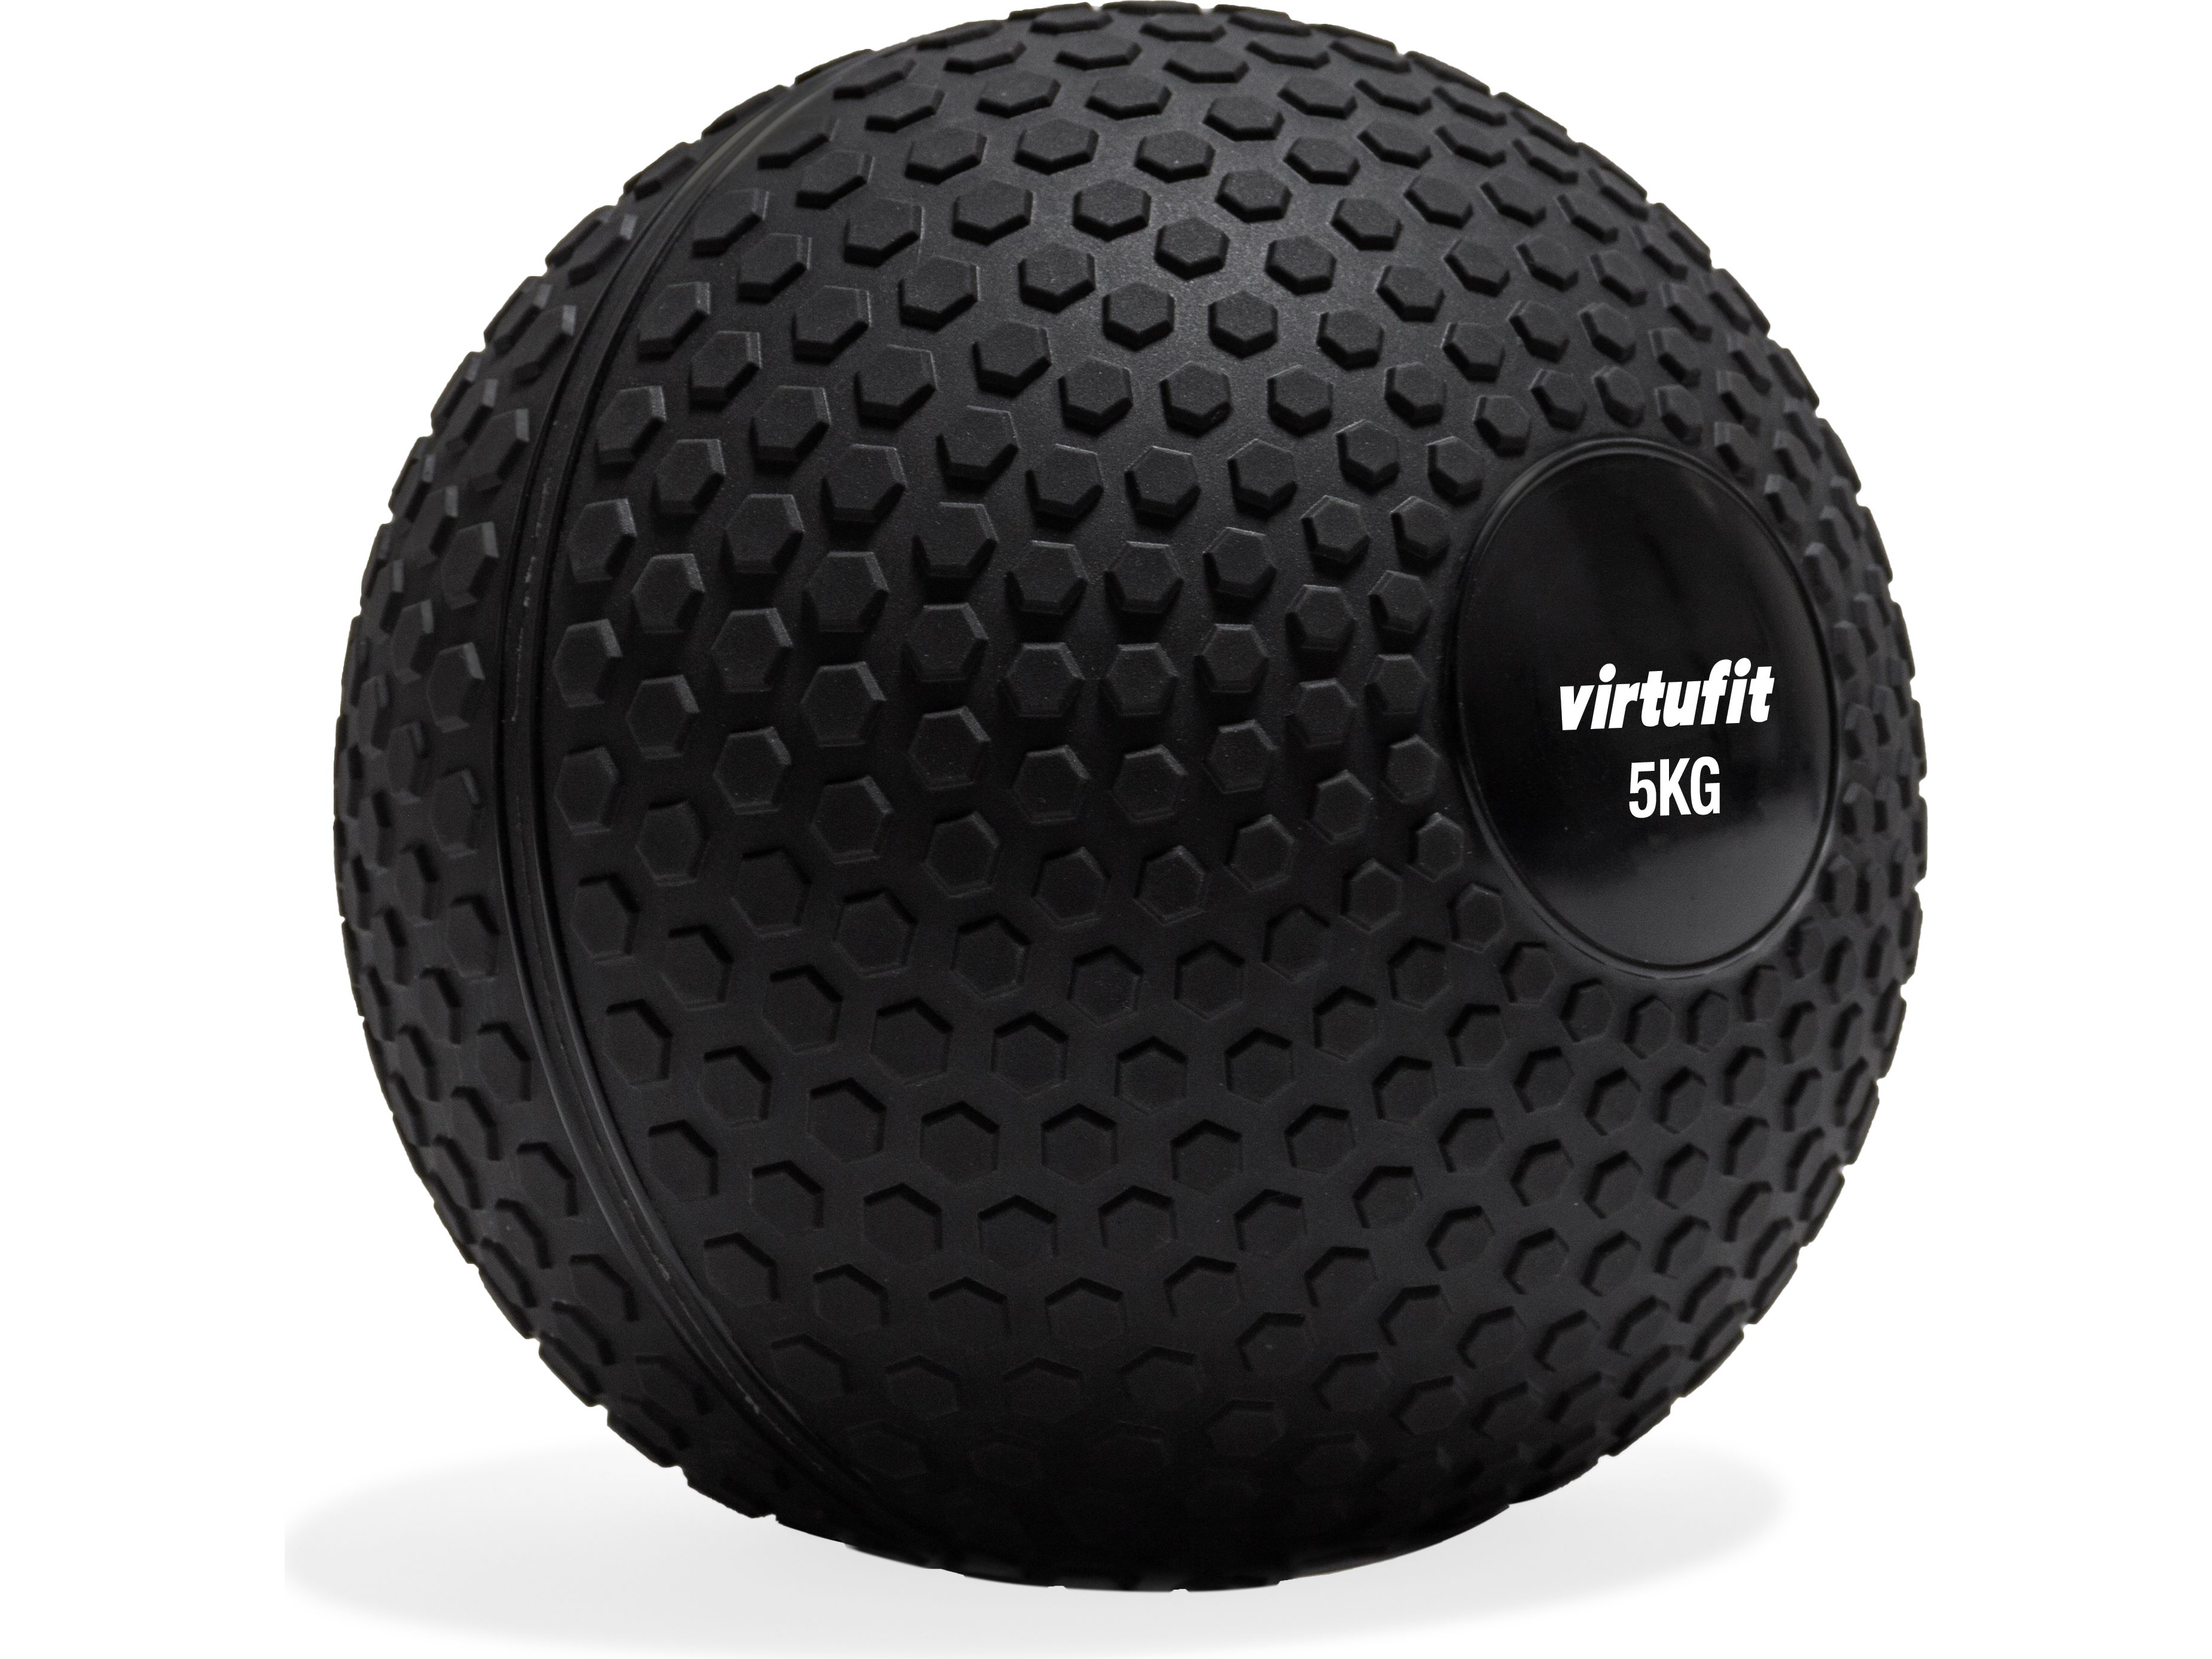 virtufit-slam-ball-5-kg